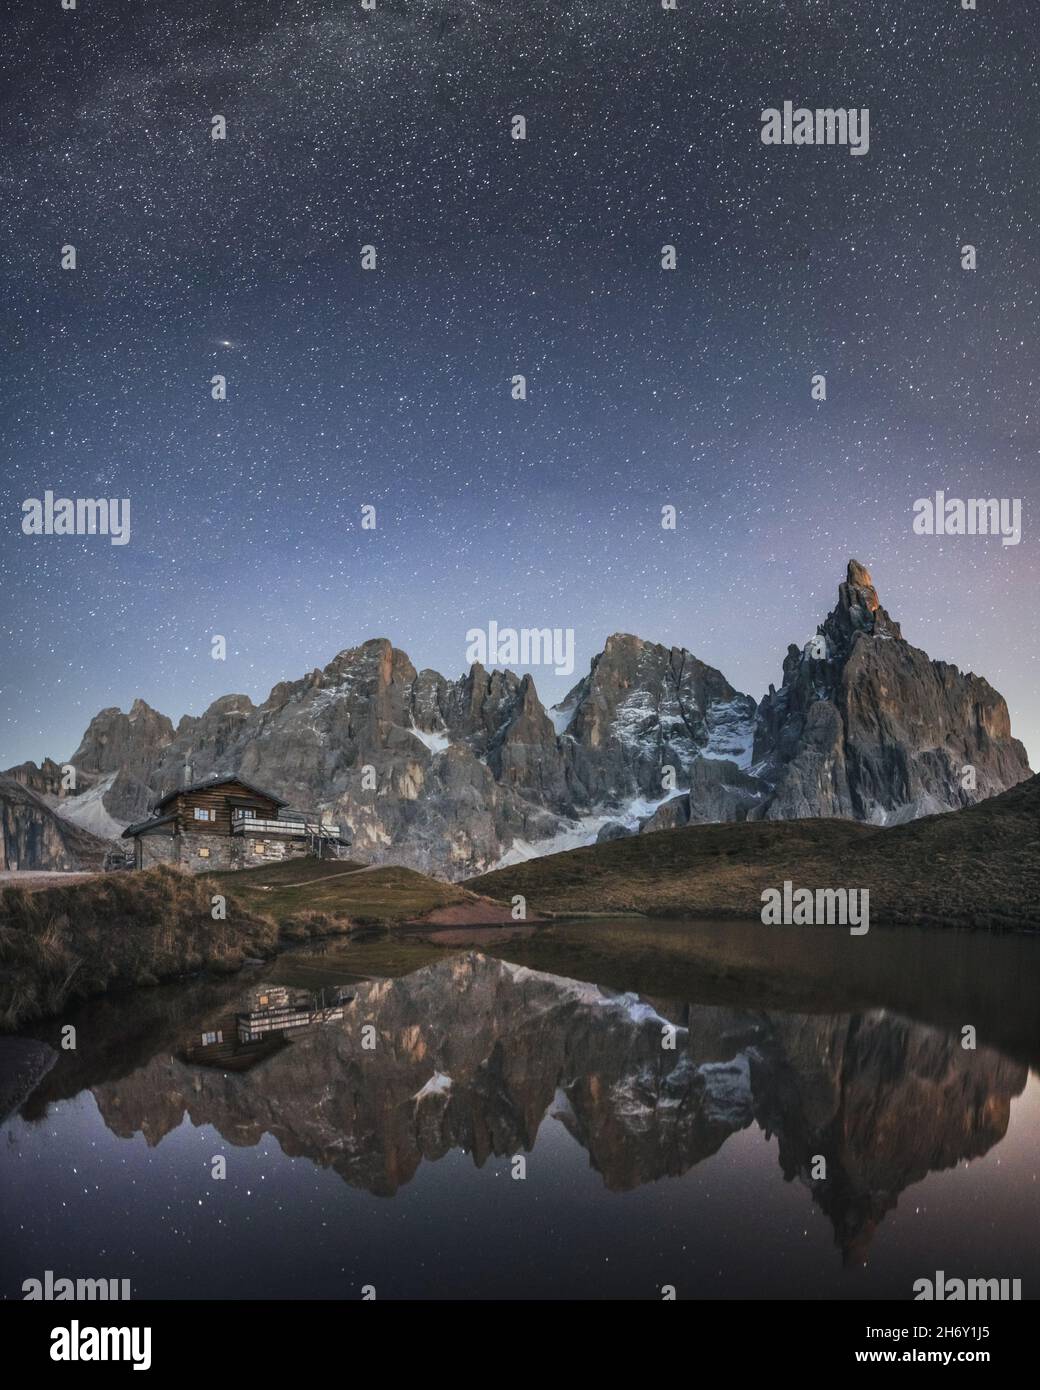 Unglaubliche Nachtlandschaft mit einer Reflexion des Sternenhimmels und der Berge in einem Wasser des kleinen Sees in einem beliebten Touristenziel - Baita Segantini Berghütte. Rollepass, Dolomiten Alpen, Italien Stockfoto